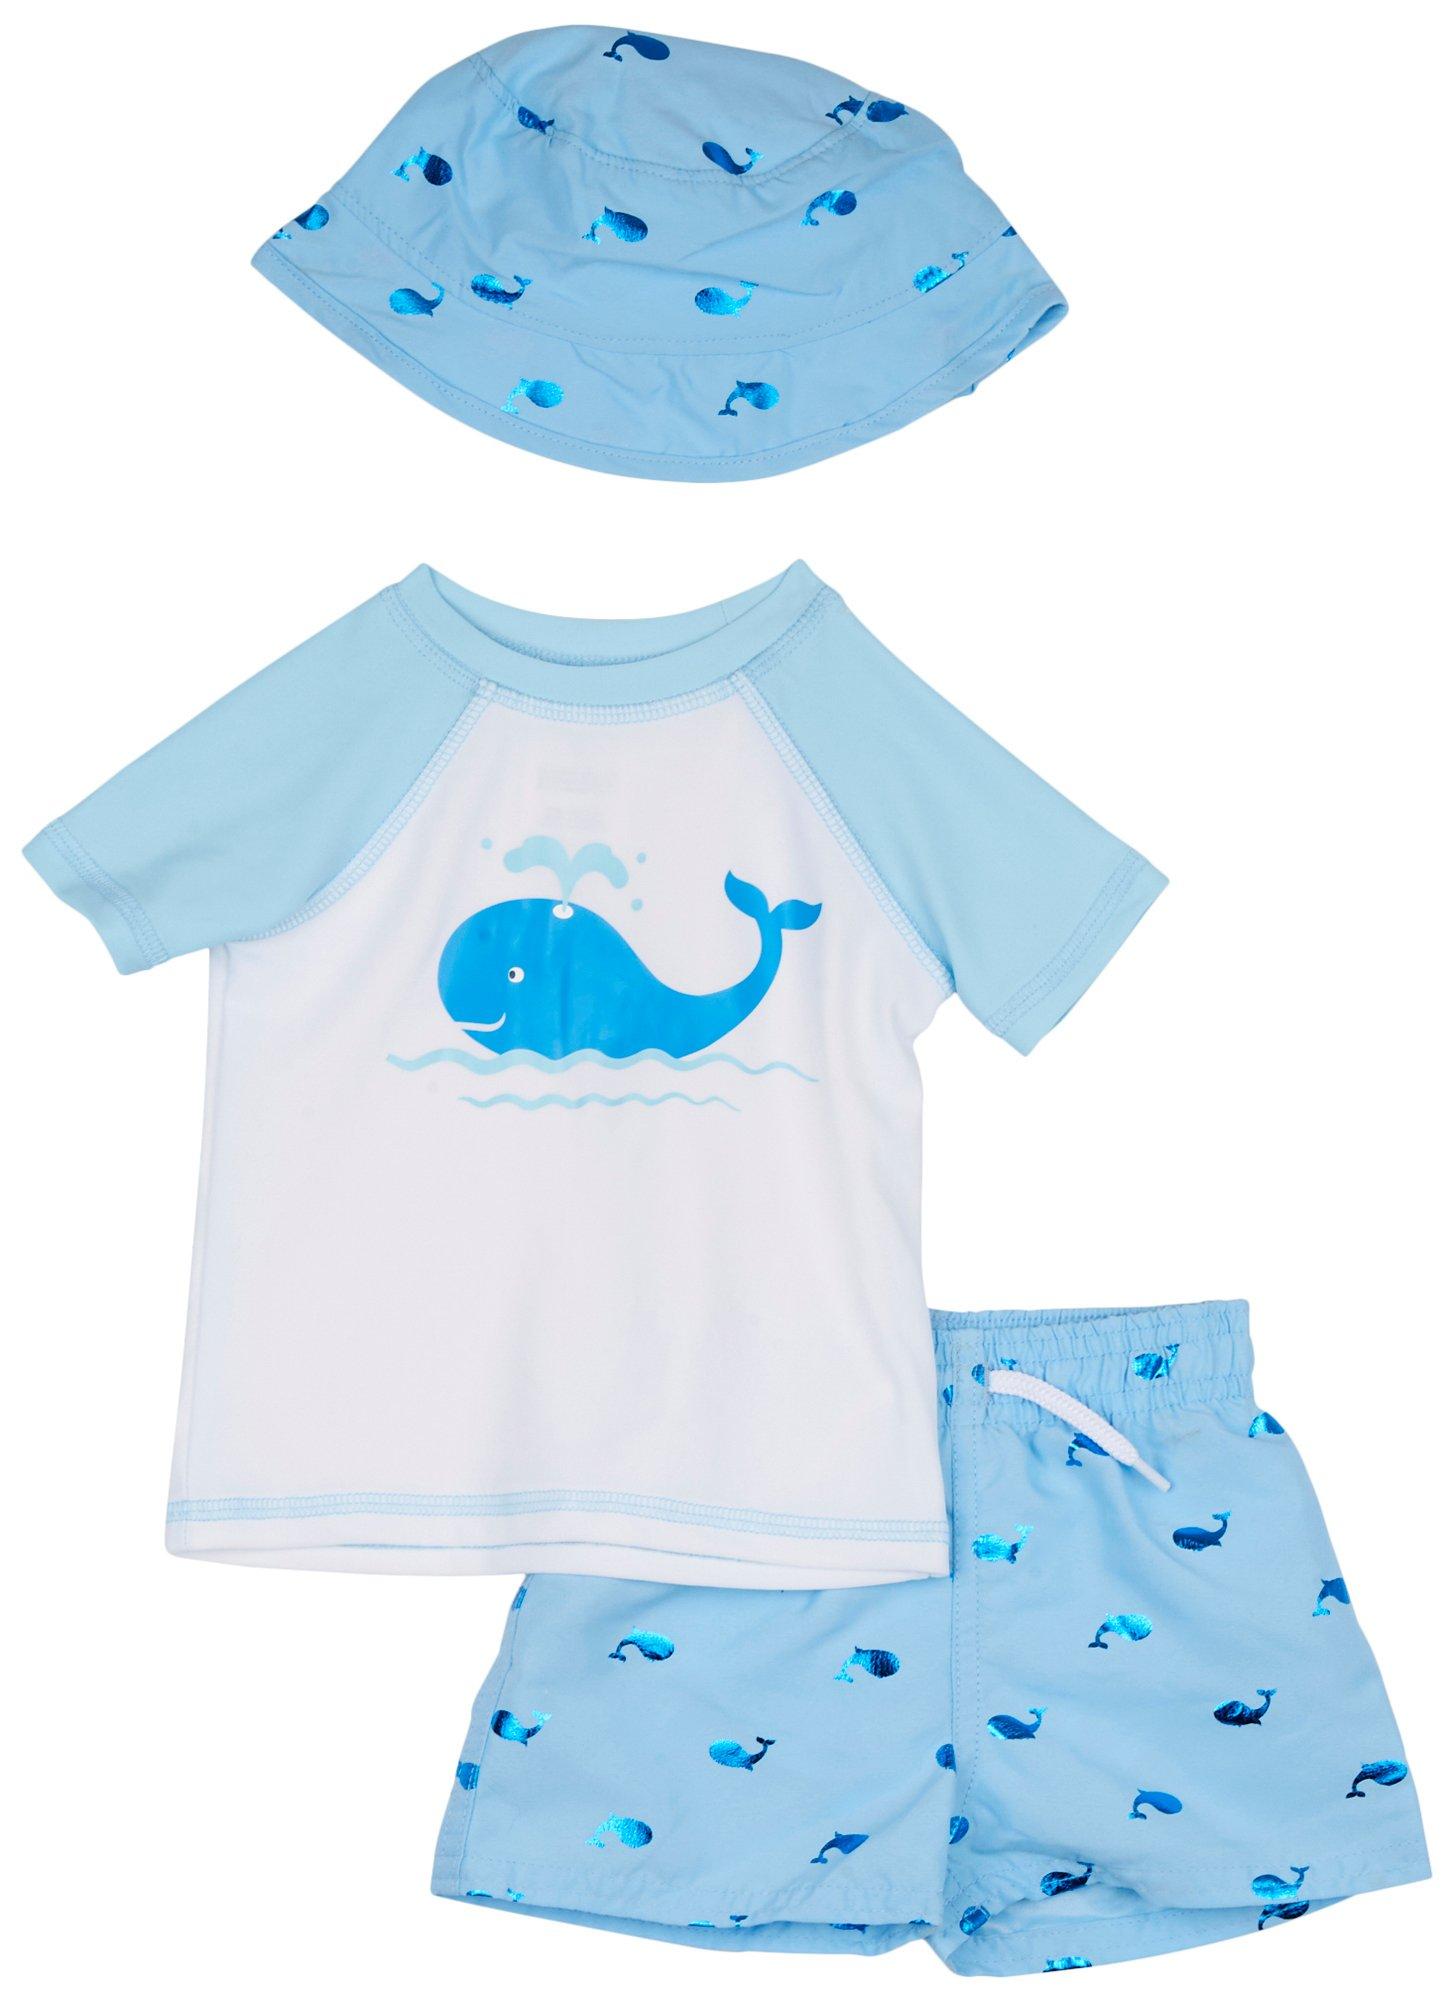 Floatimini Baby Boys 3-pc. Whale Foil Swimsuit Set